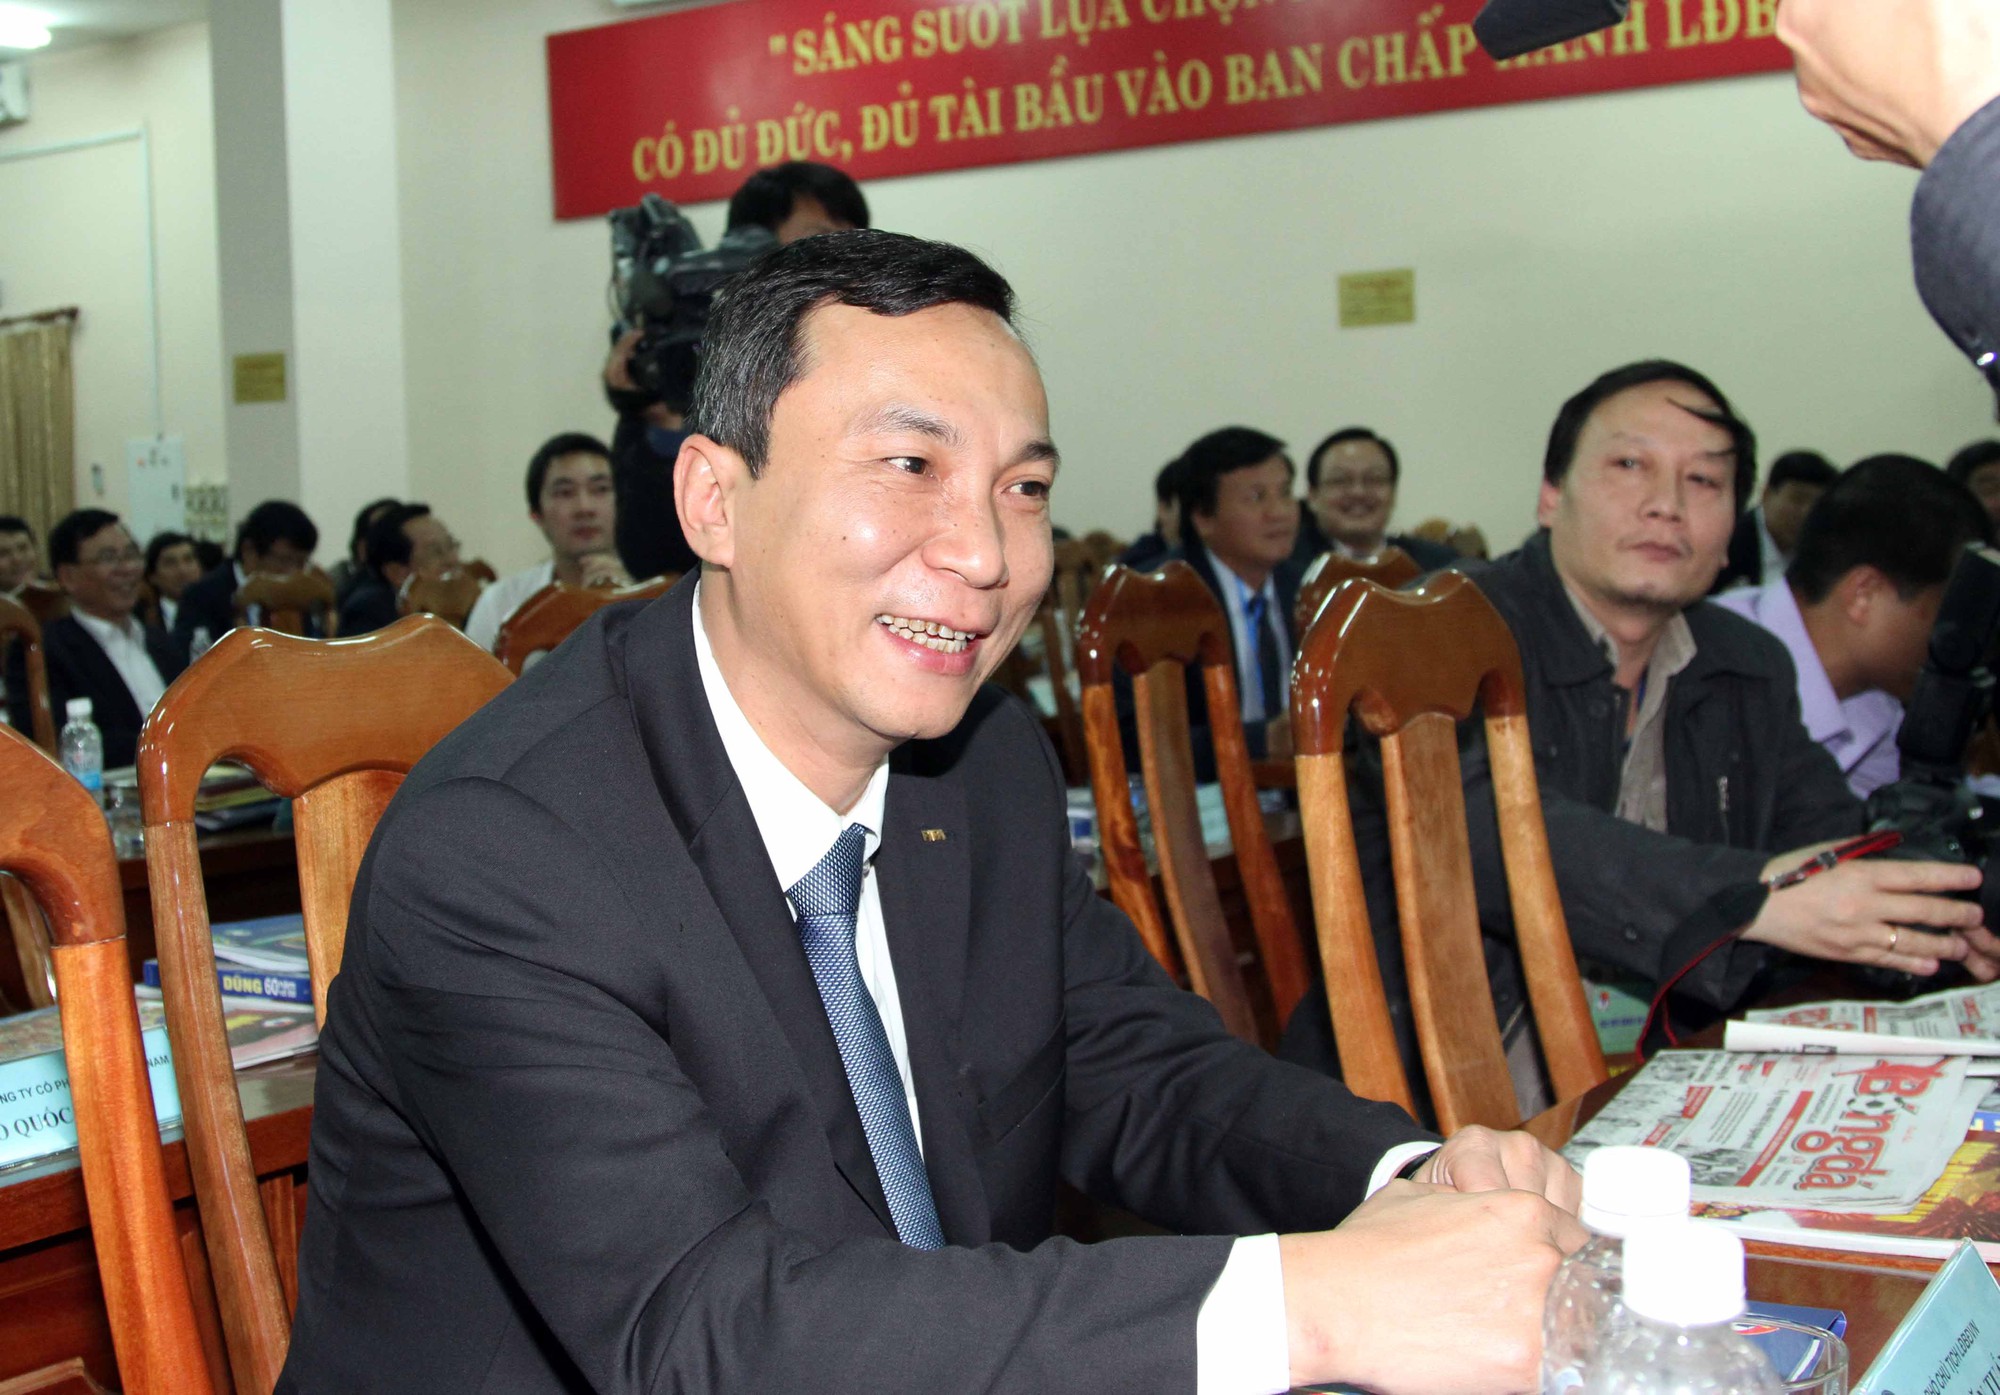 Phó chủ tịch thường trực VFF Trần Quốc Tuấn cho biết việc ra các quyết định liên quan tới trọng tài là do Ban trọng tài quyết định.